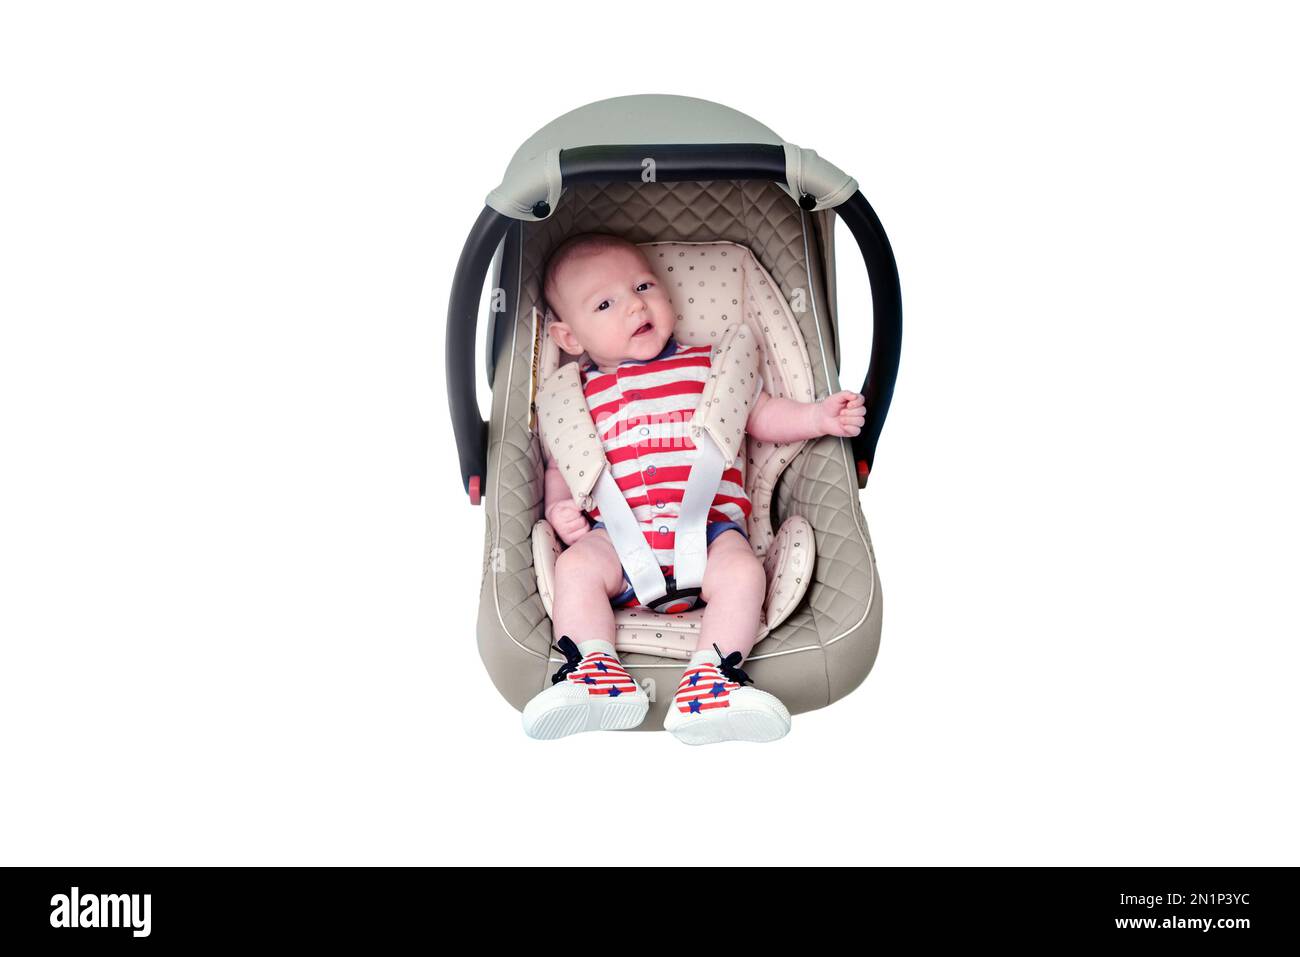 Bébé dans un siège d'auto pour bébé sur fond bleu studio, isolé sur fond  blanc. Enfant dans les vêtements du drapeau américain rouge et blanc.  Enfant de deux mois Photo Stock -